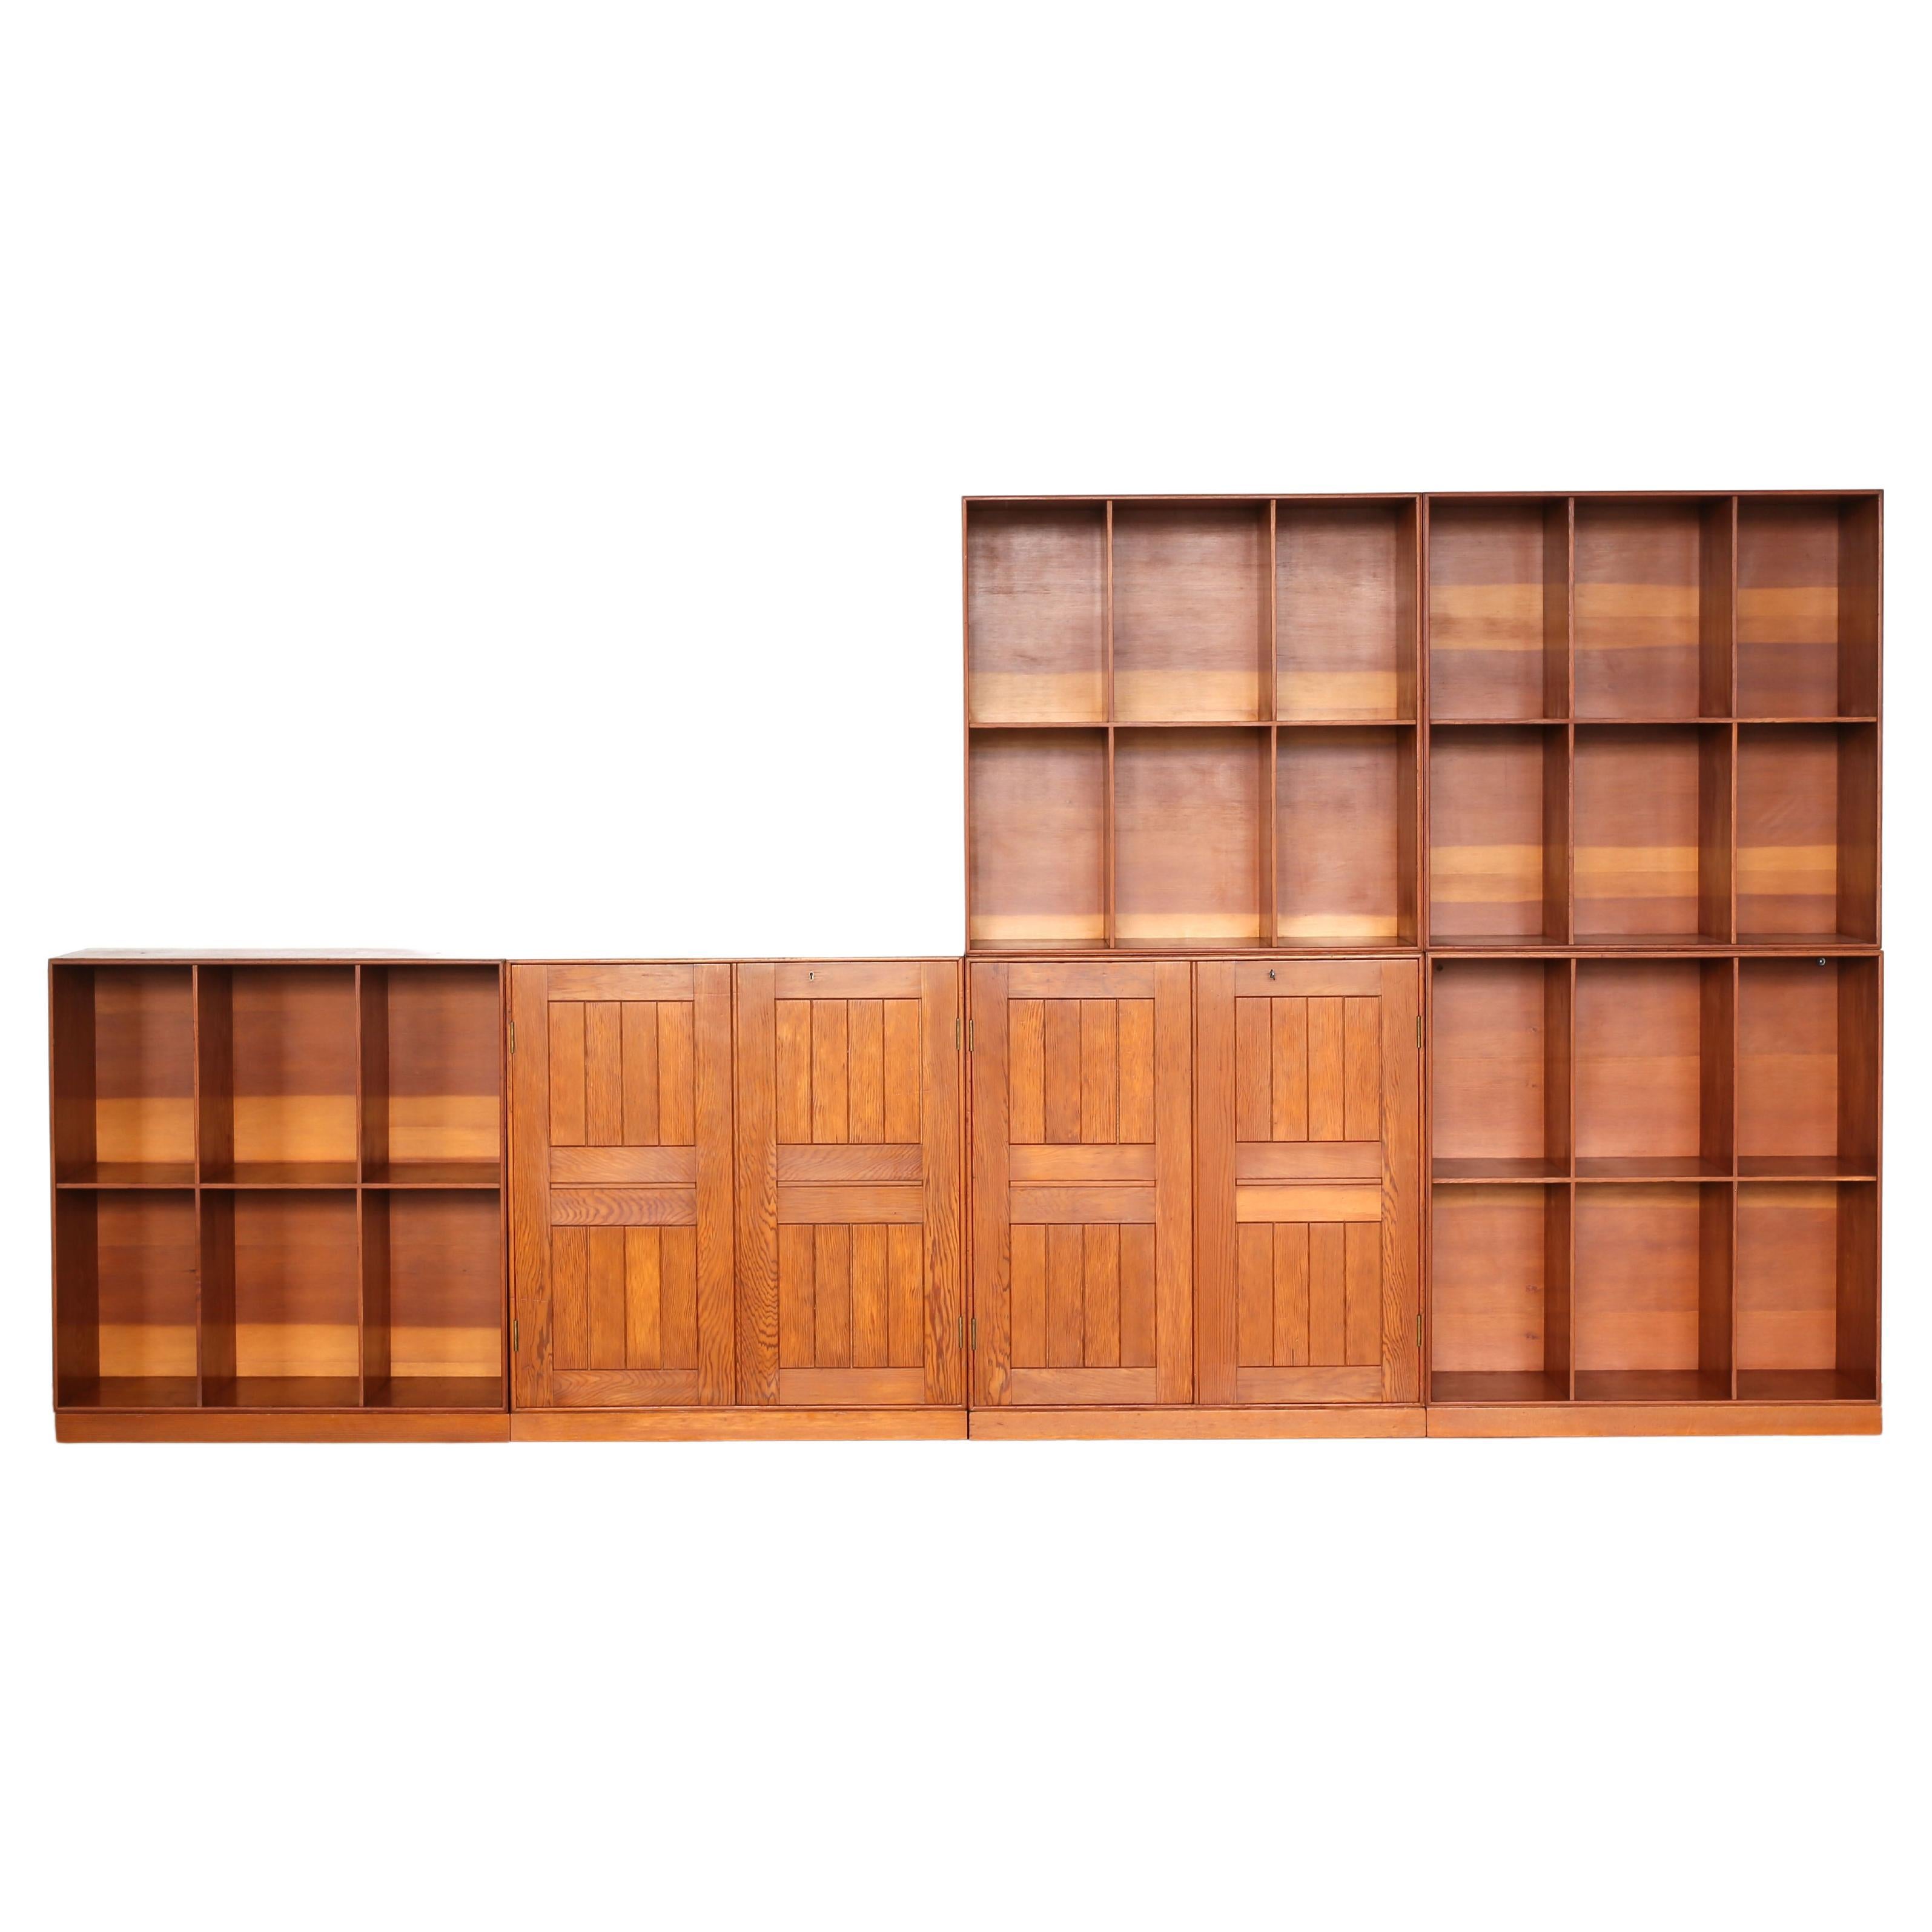 Bibliothèque modulaire Mogens Koch en pin de l'Oregon, composée de deux armoires et de quatre boîtes à livres avec socles. 

Conçu de 1928 à 1932, exécuté chez l'ébéniste Rud. Rasmussen, Copenhague, Danemark. Toutes les pièces sont marquées au